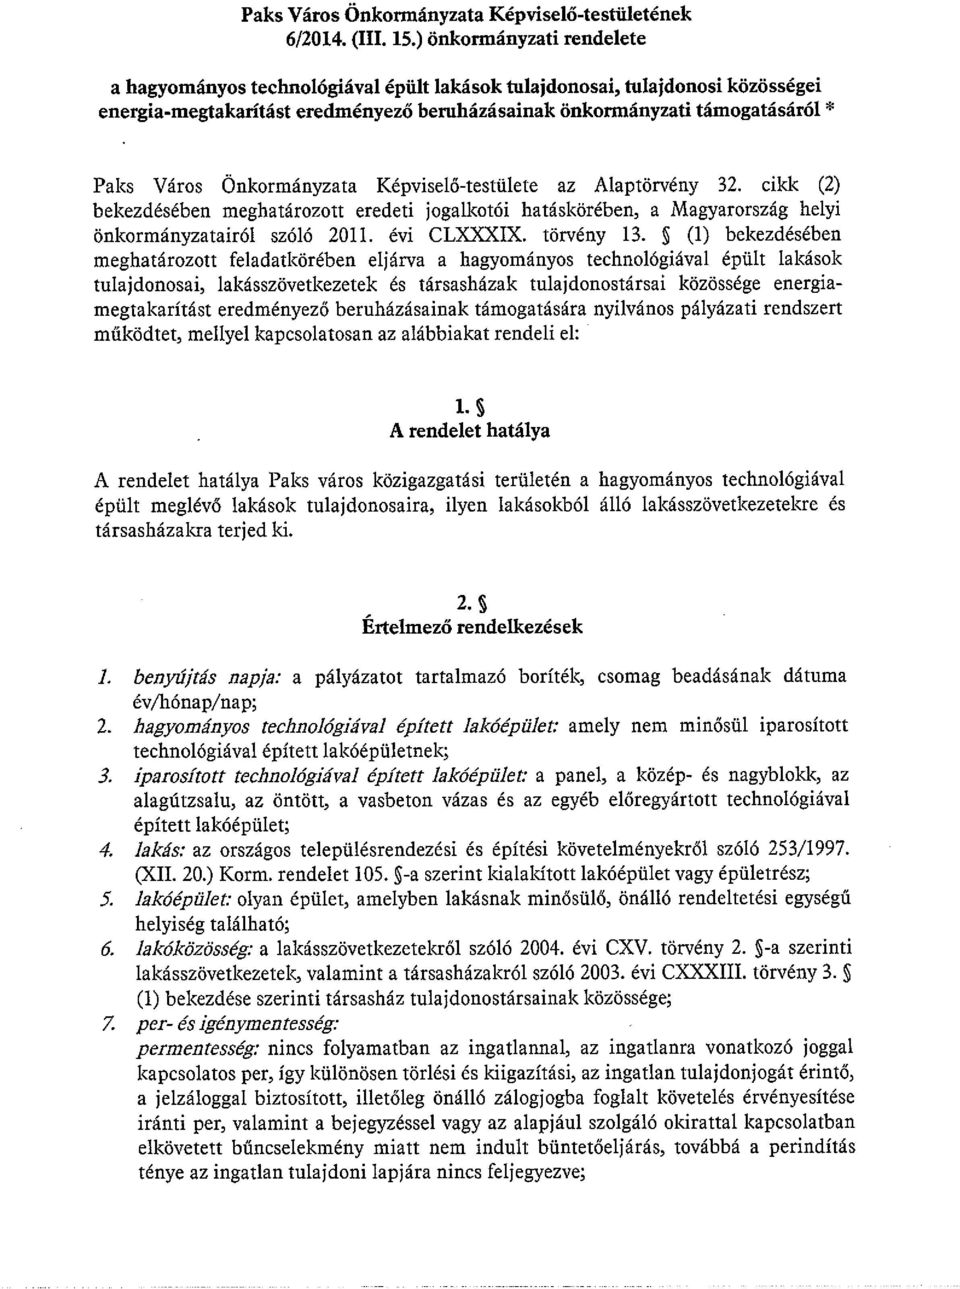 Önkormányzata Képviselő-testülete az Alaptörvény 32. cikk (2) bekezdésében meghatározott eredeti jogalkotói hatáskörében, a Magyarország helyi önkormányzatairól szóló 2011. évi CLXXX1X. törvény 13.